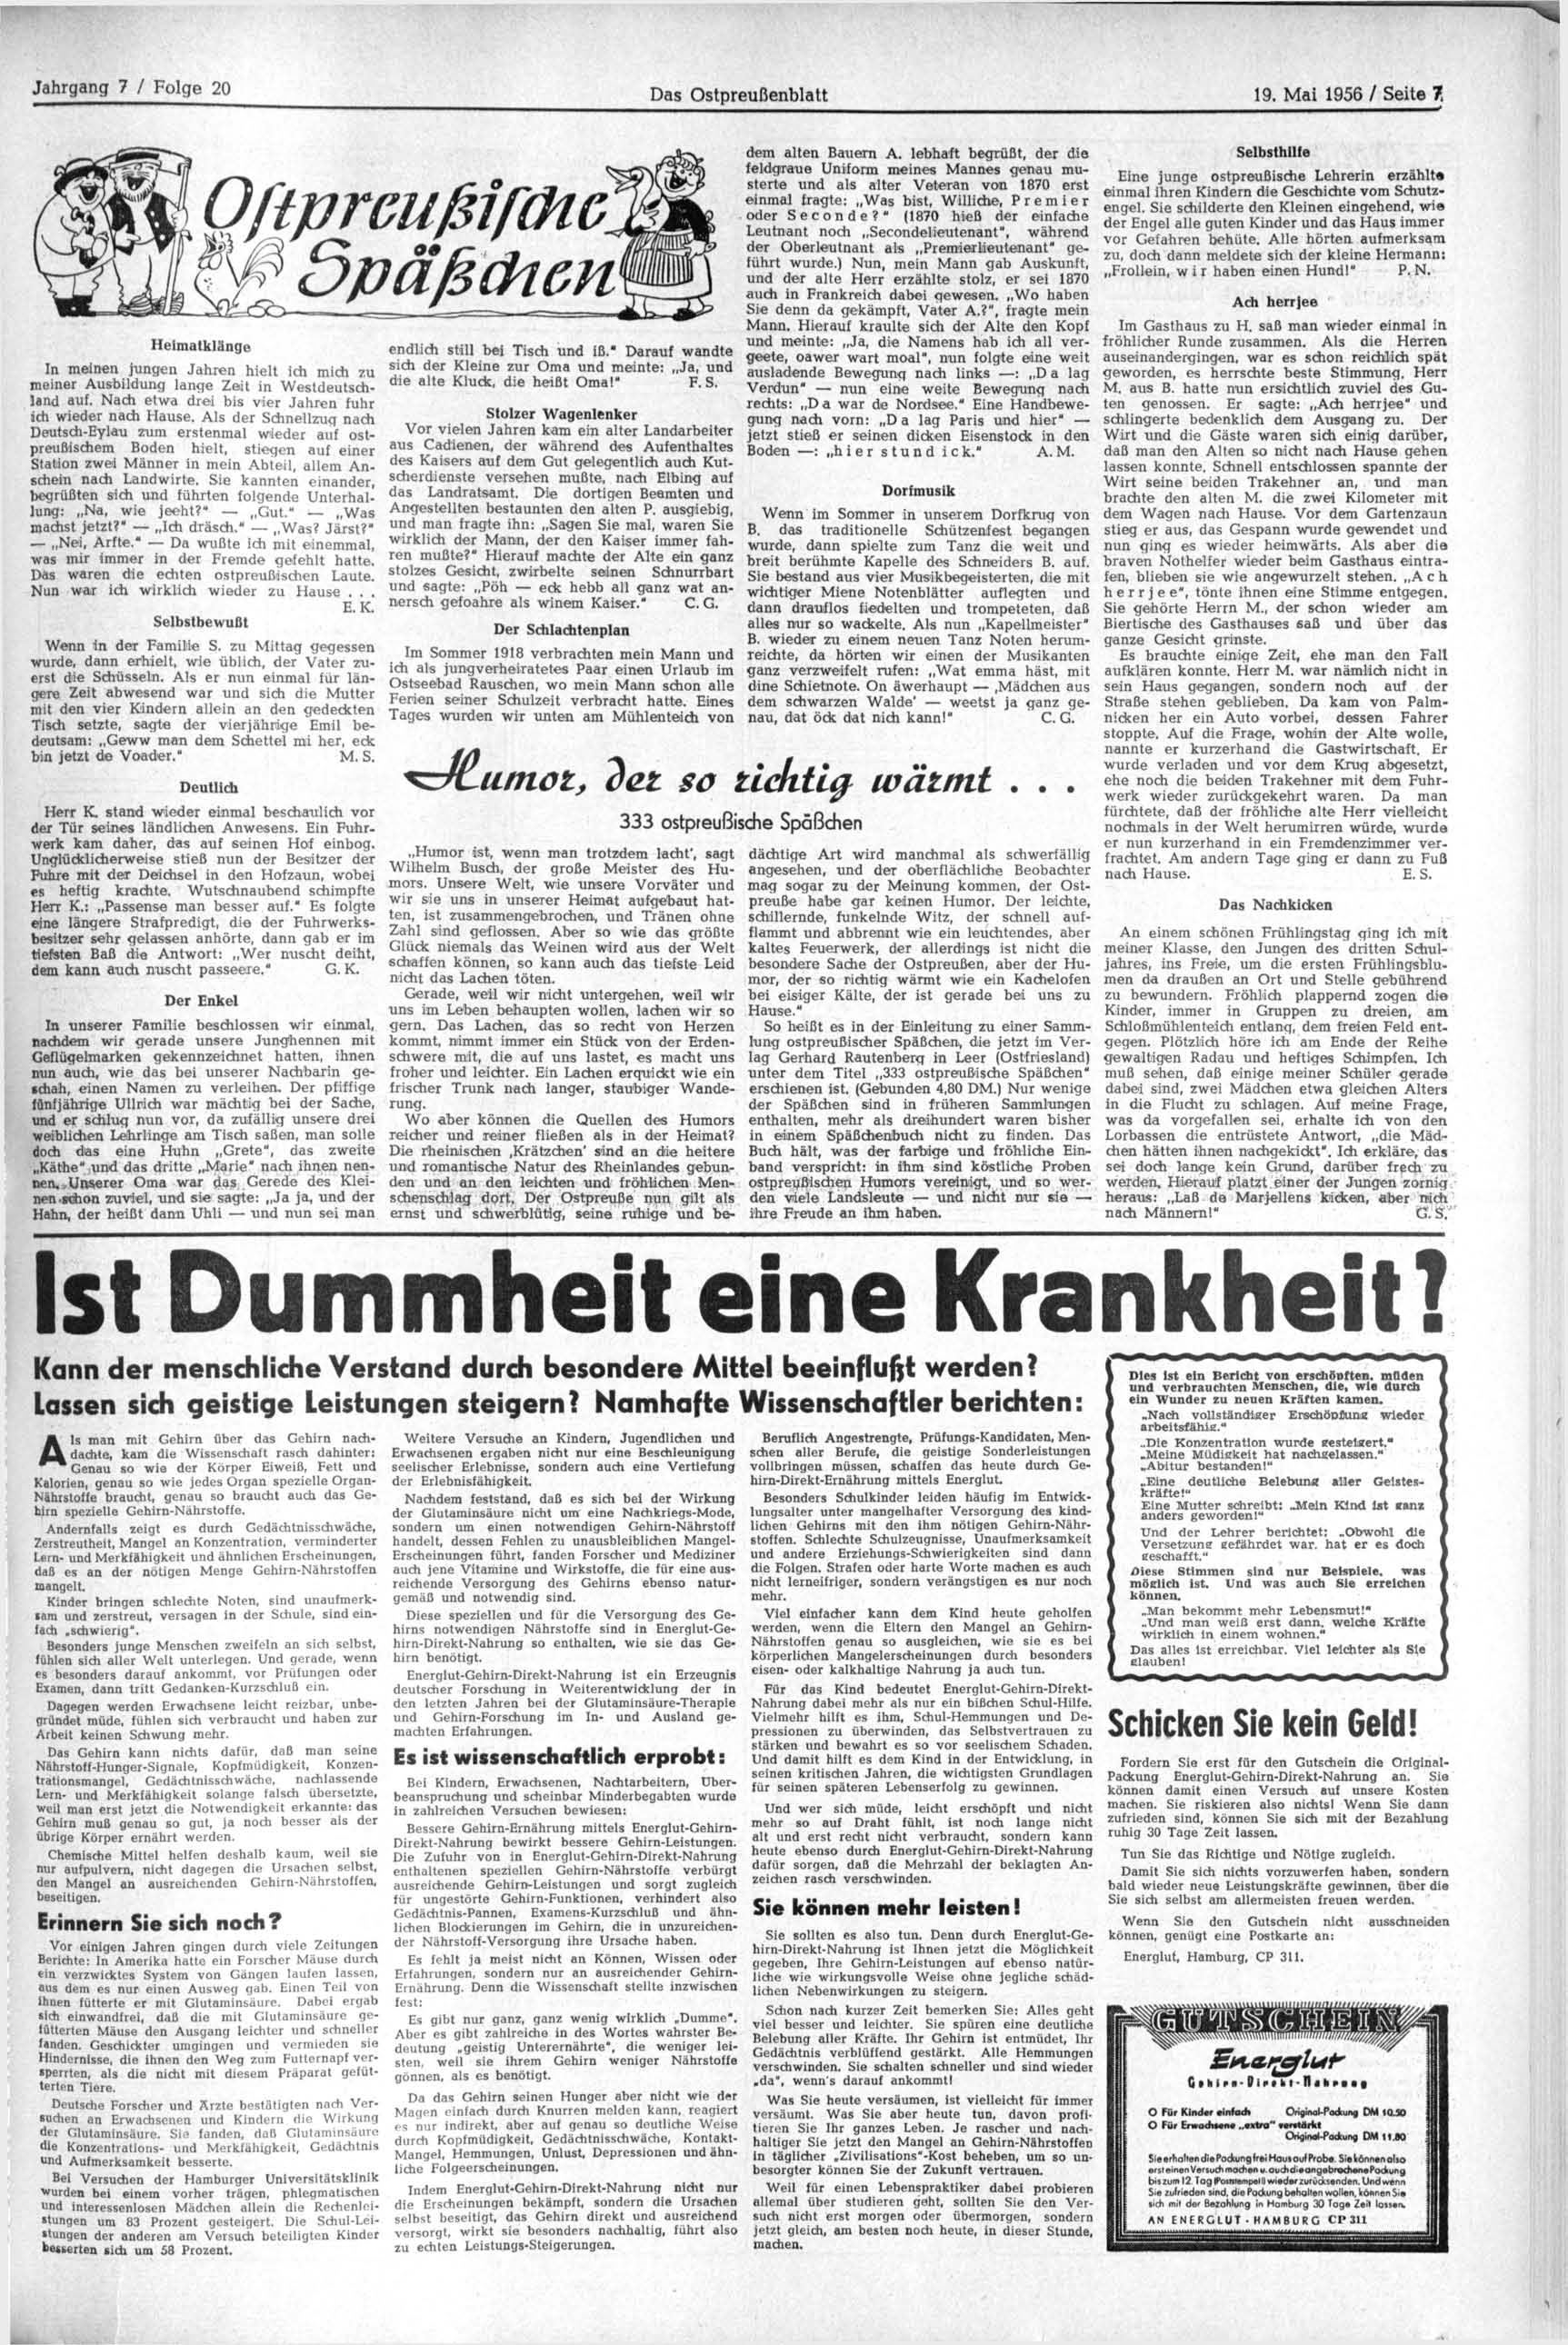 Das Ostpreußenblatt 19. Mai 1956 / Seite 7, Heimatklänge In meinen jungen Jahren hielt ich mich zu meiner Ausbildung lange Zeit in Westdeutschland auf.